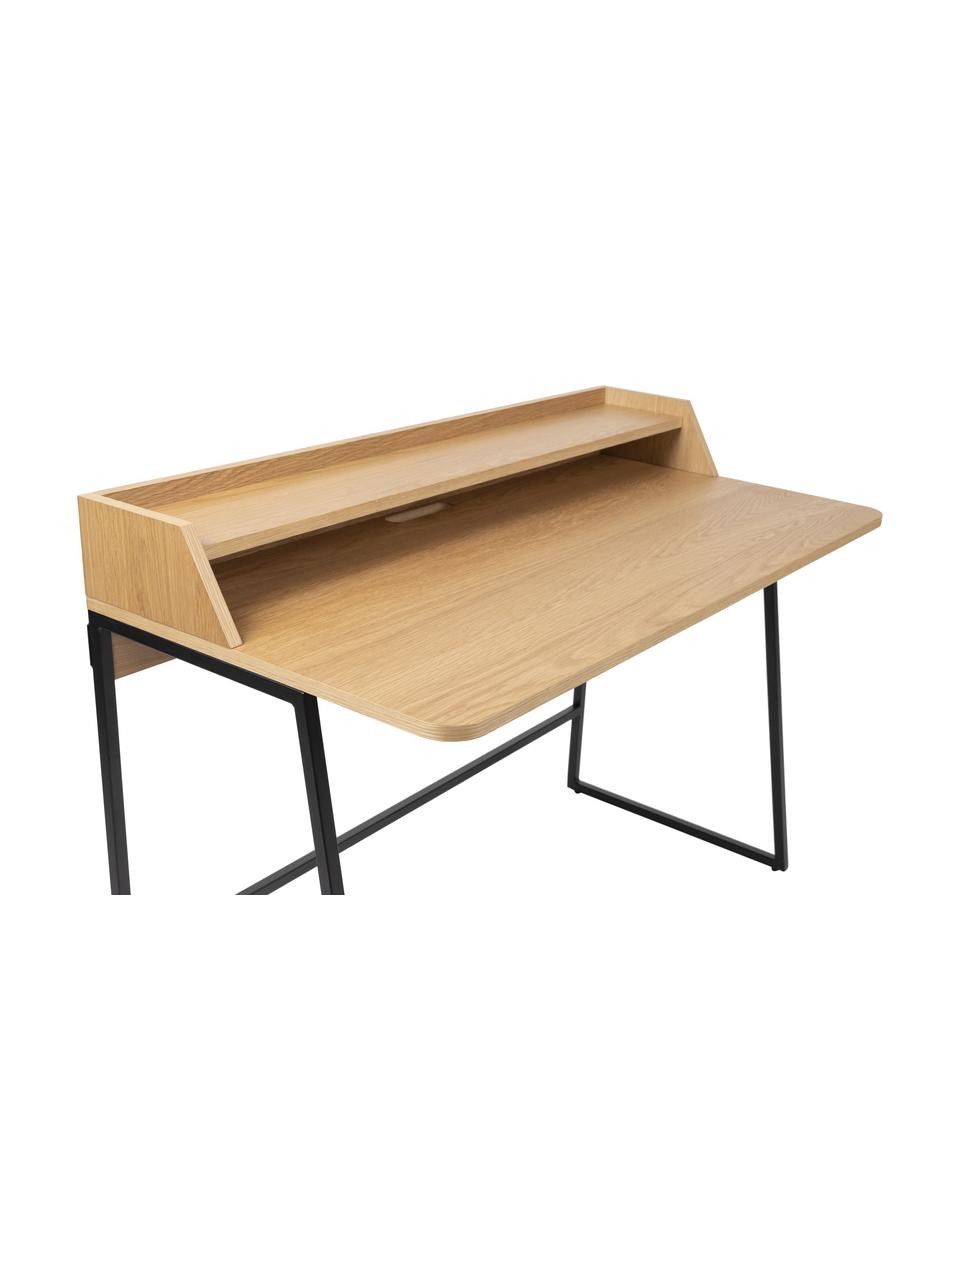 Schreibtisch Giorgio aus Holz und Metall, Gestell: Metall, pulverbeschichtet, Holz, B 120 x T 60 cm